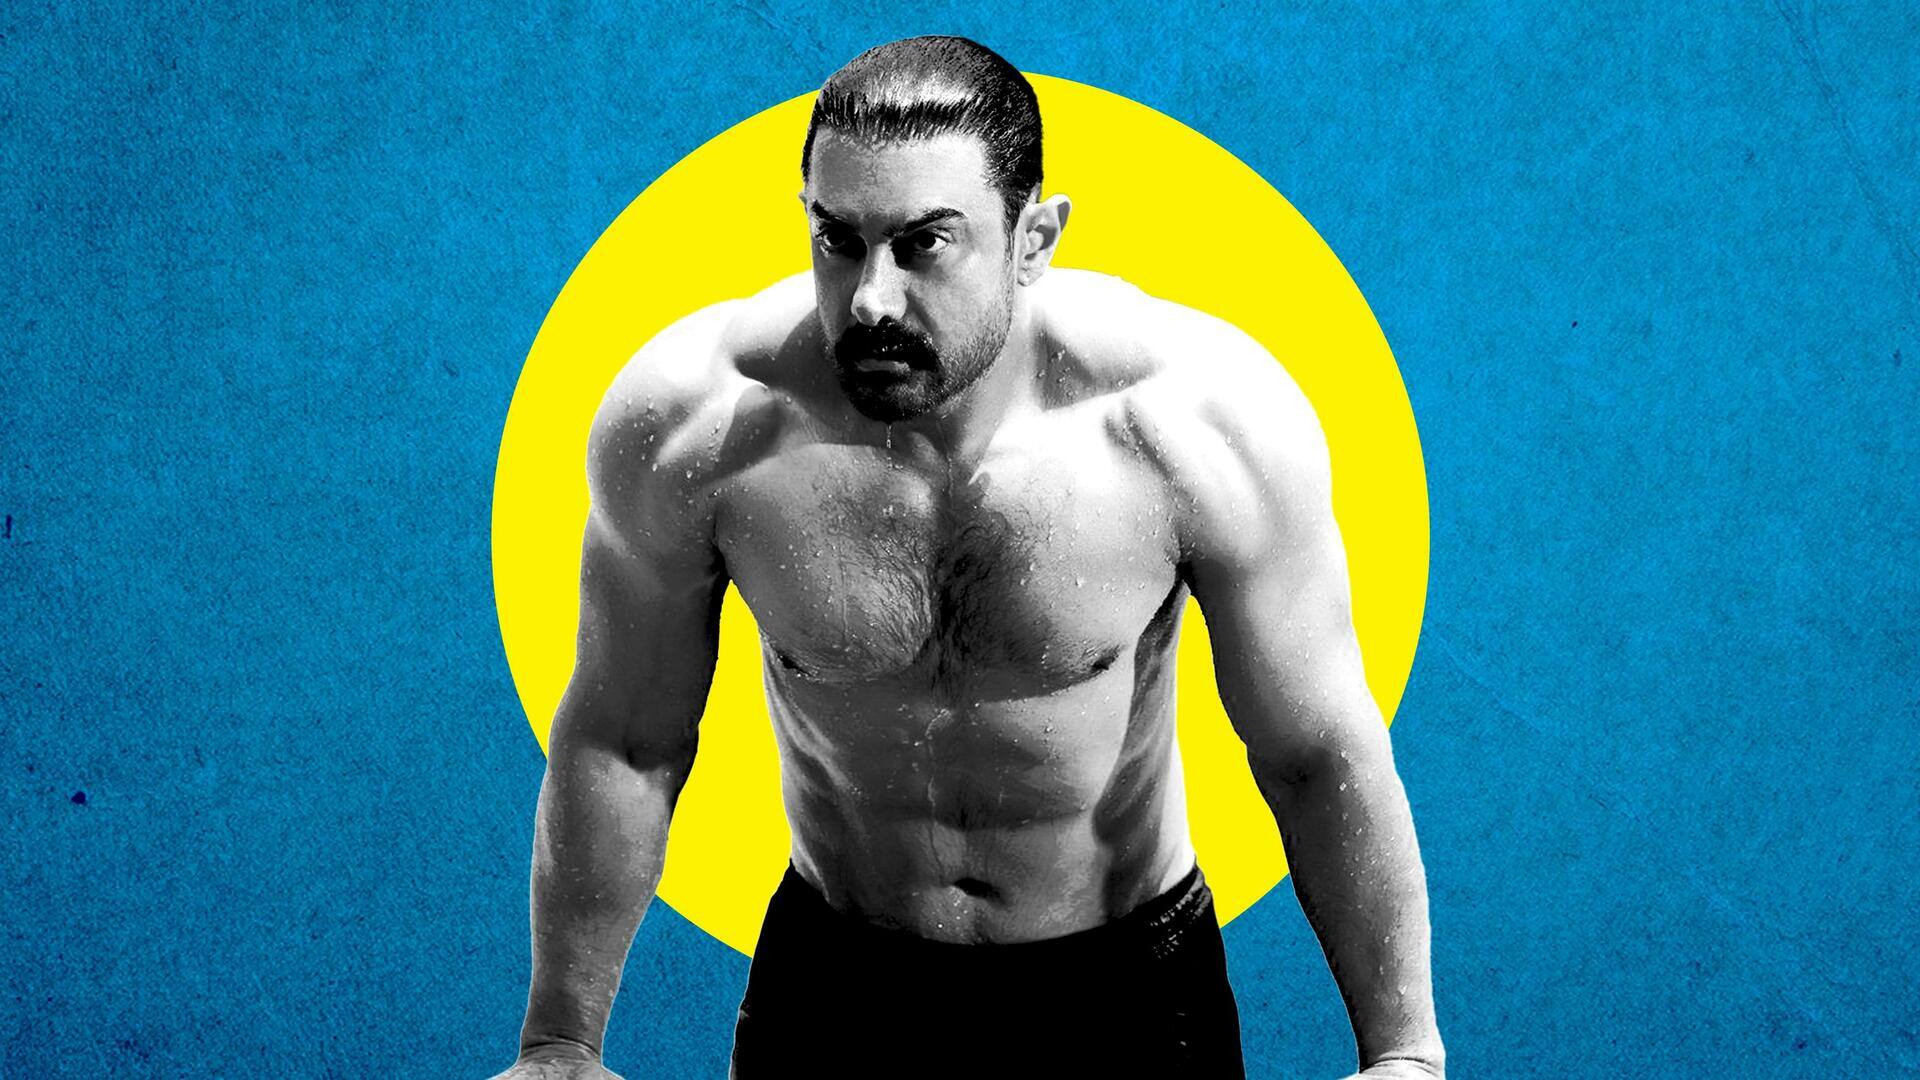 जन्मदिन विशेष: आमिर खान फिटनेस के लिए फॉलो करते हैं यह डाइट और वर्कआउट प्लान